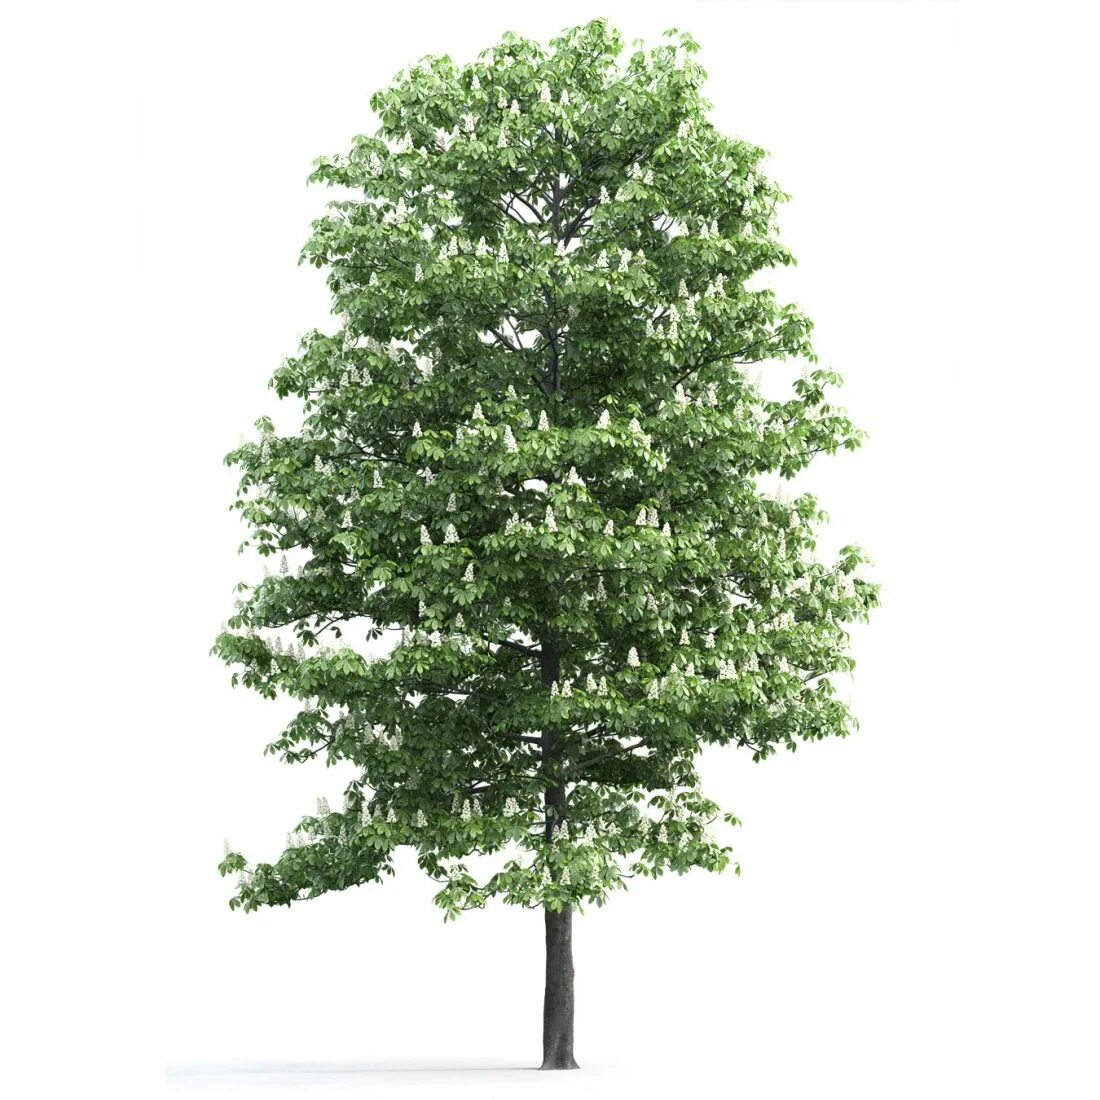 1 июля дерево. Каштан дерево. Одно дерево. Каштан в полный рост. Деревья 1:18.